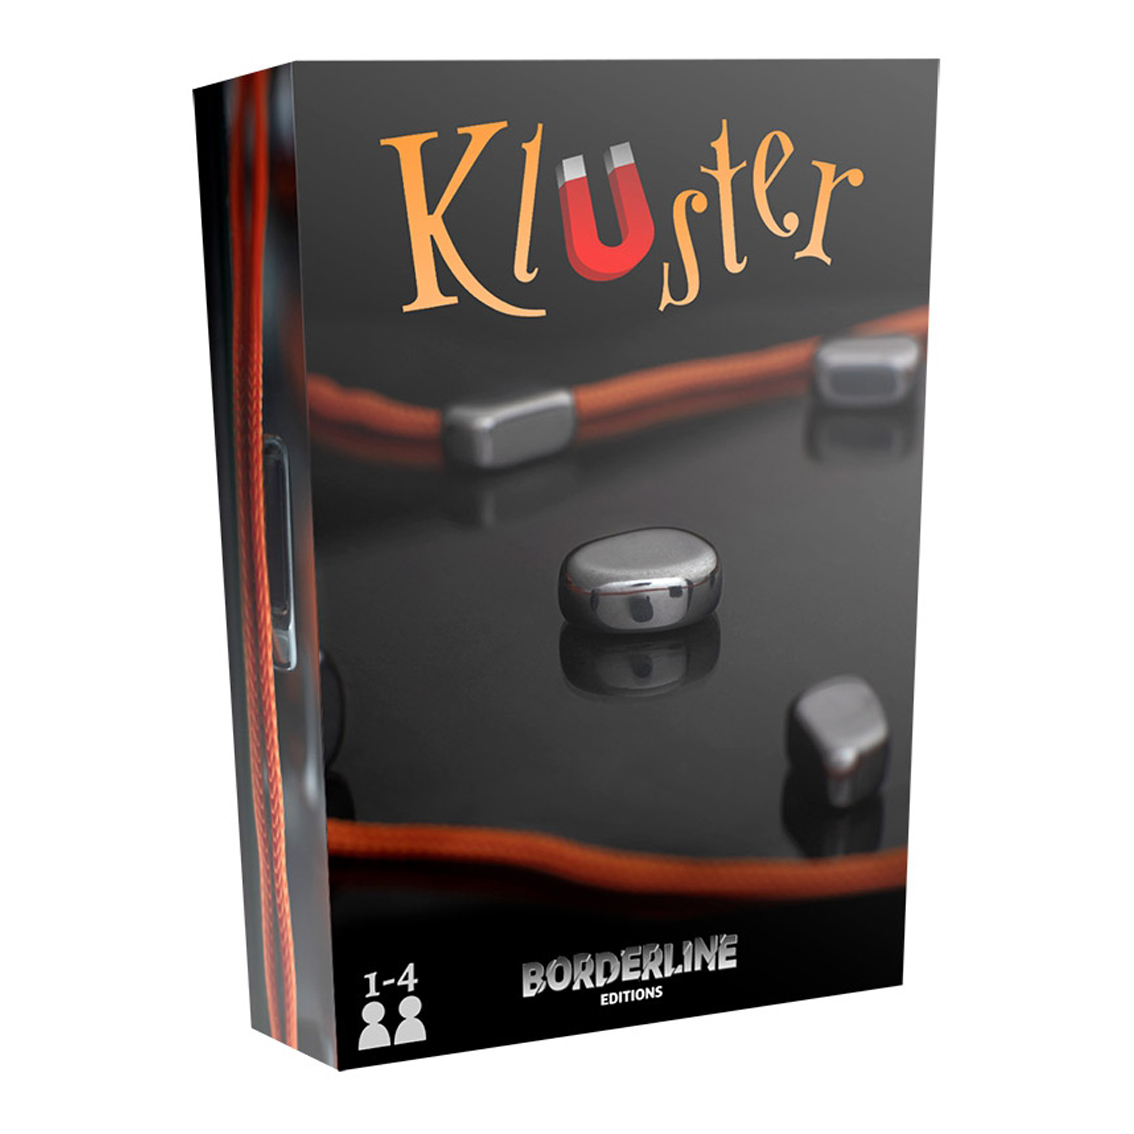 Kluster Astuce - Le coin des joueurs